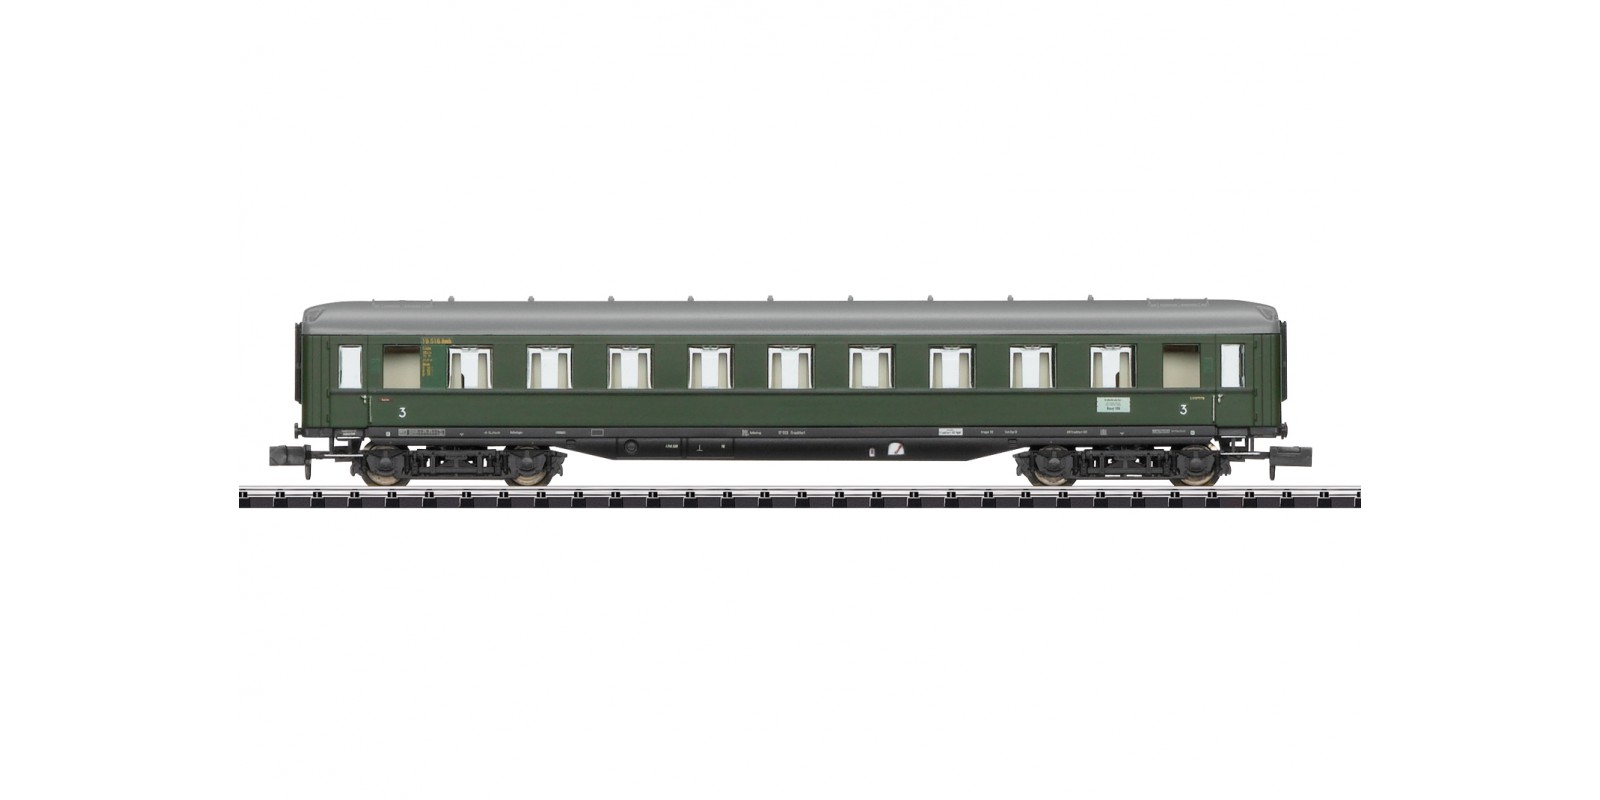 T18486 D 96 Express Train Passenger Car, 3rd Class